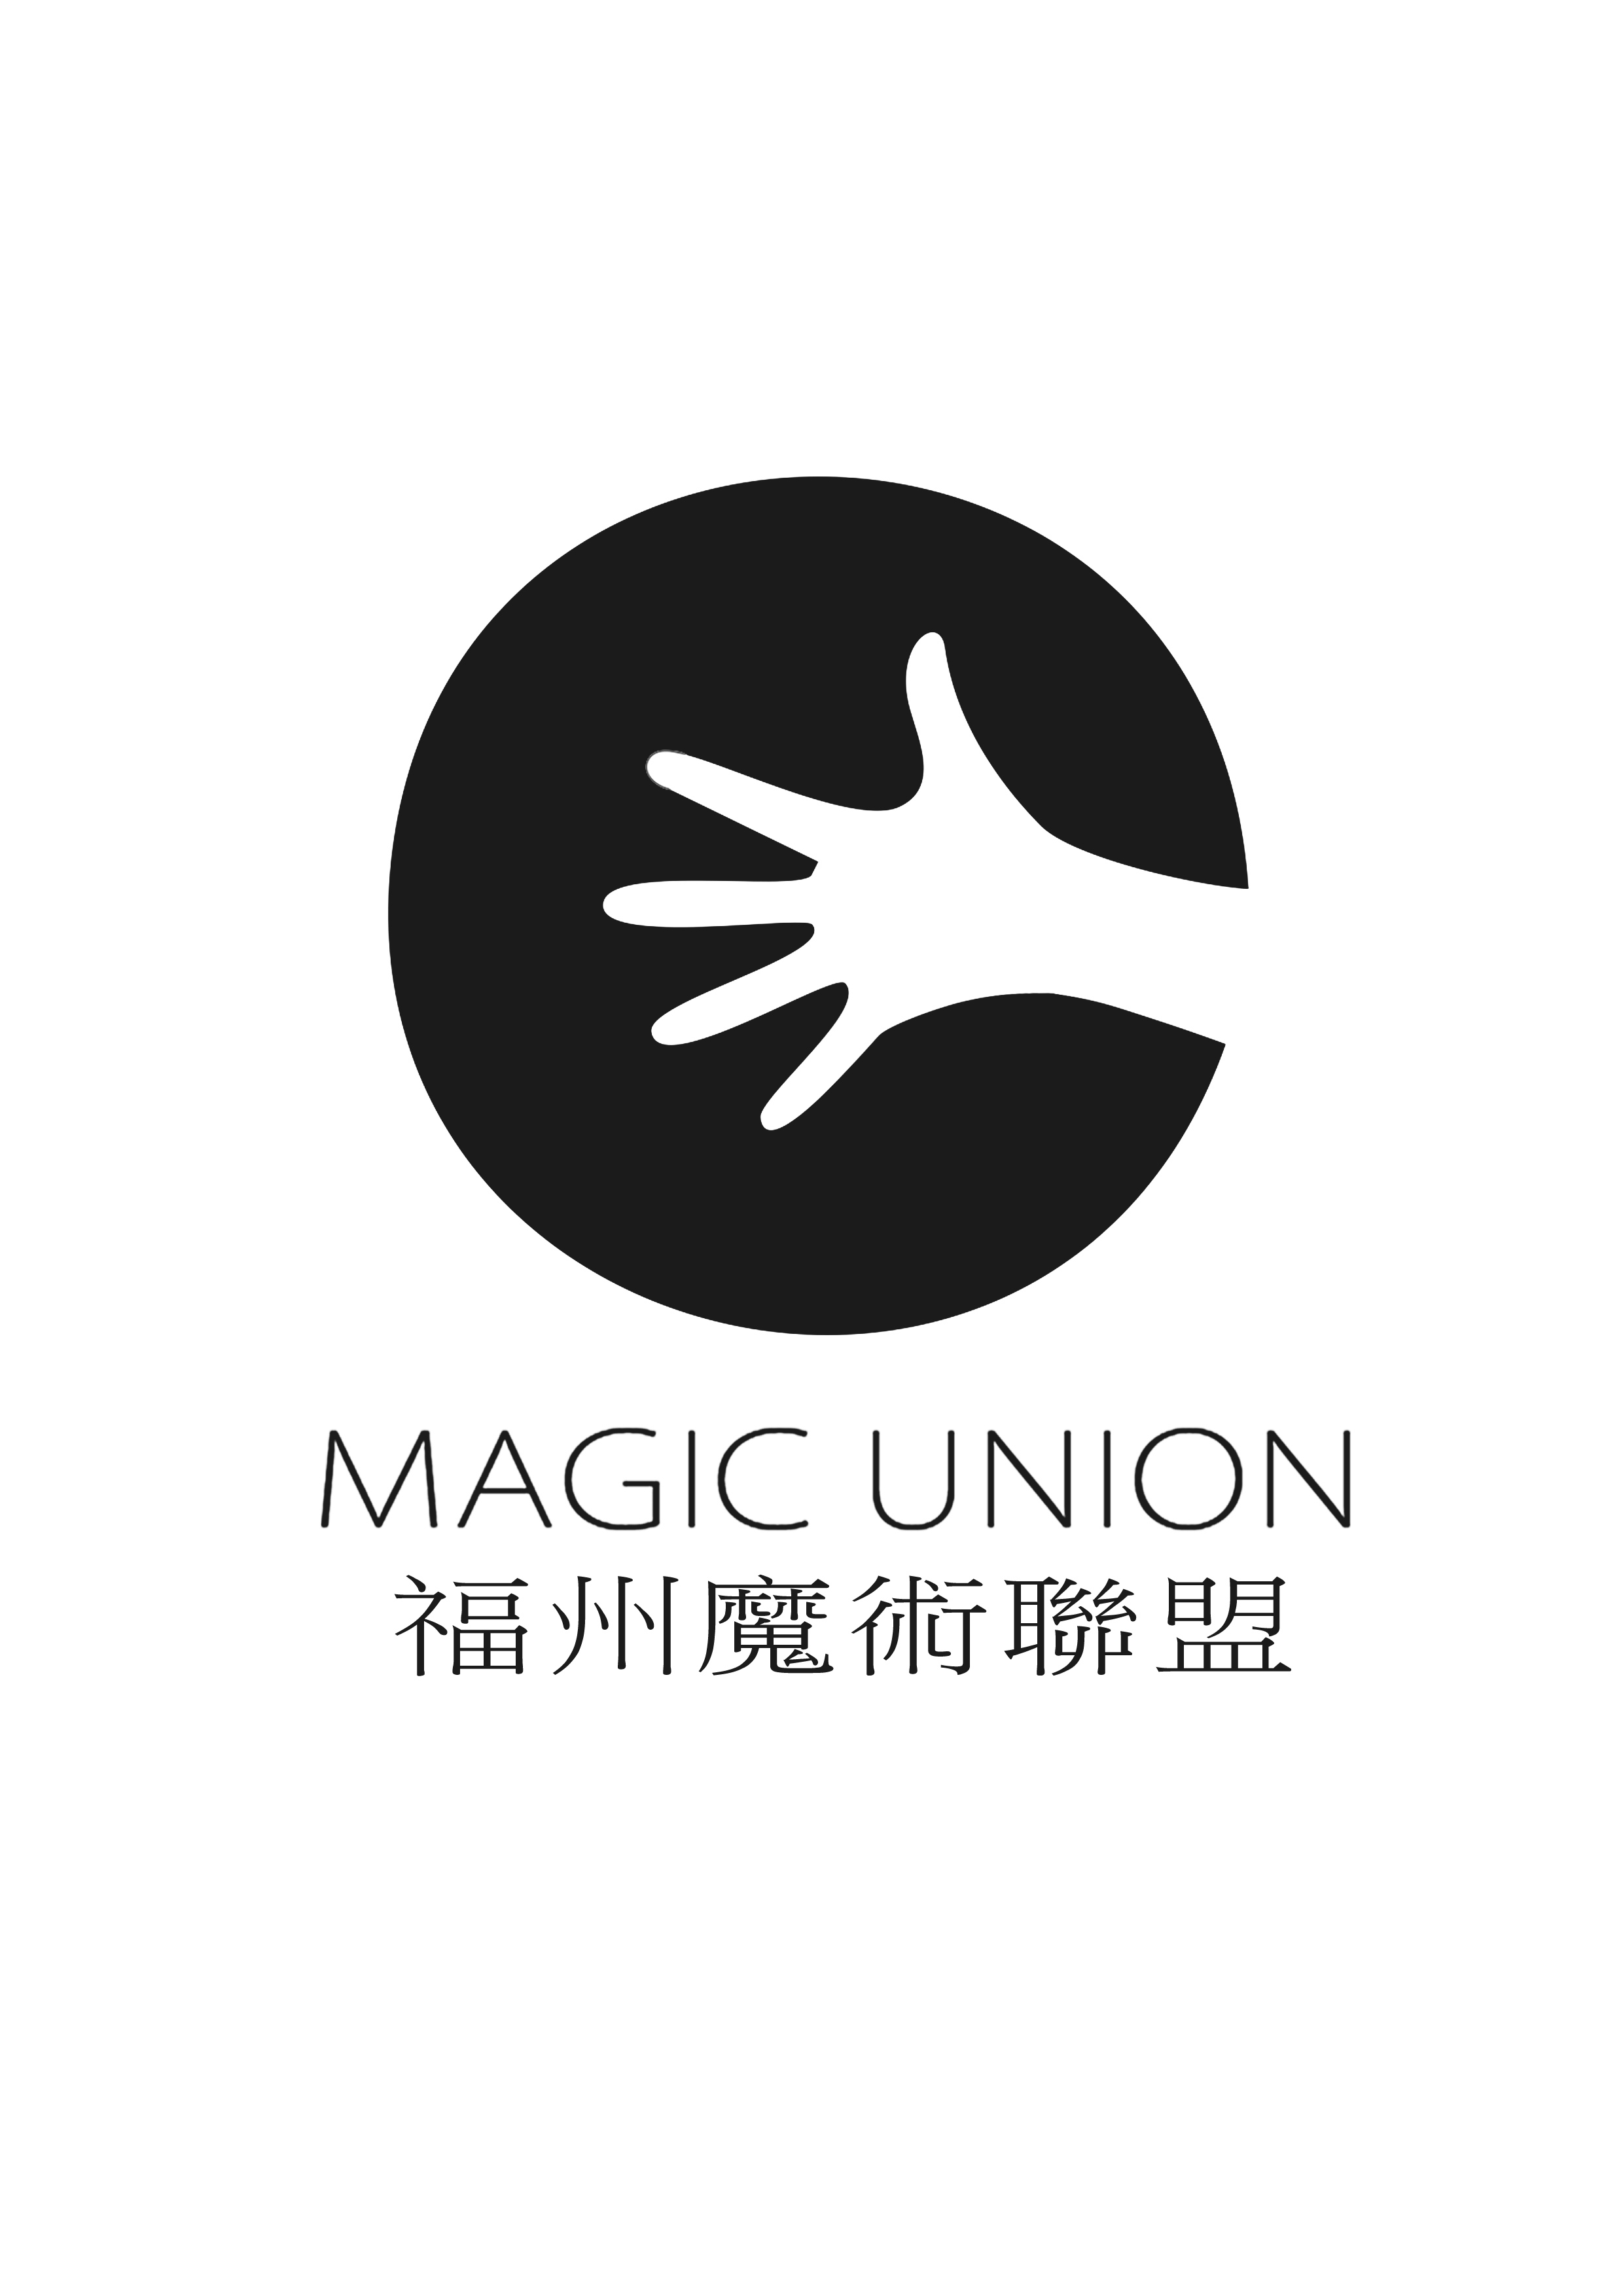 福州魔術聯盟